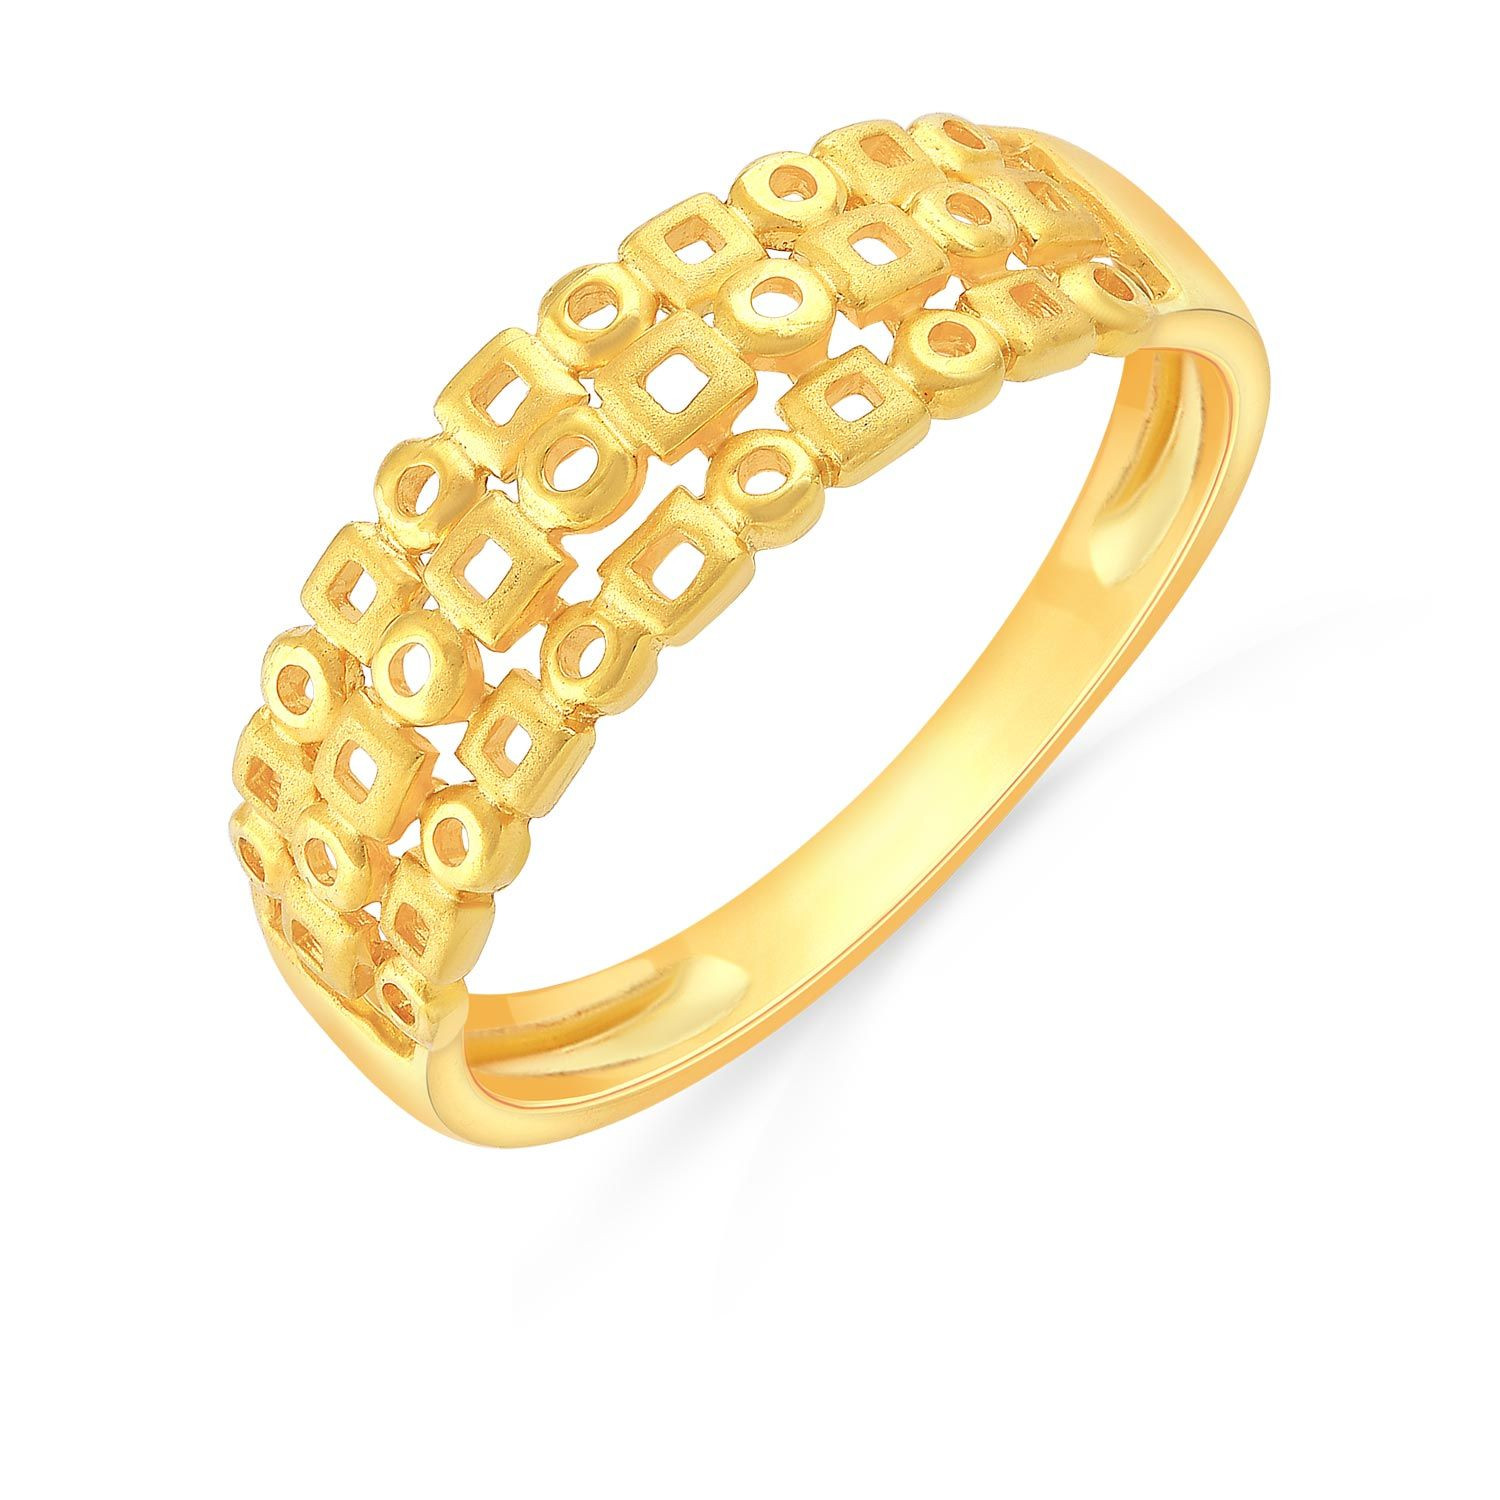 Buy Malabar Gold Ring MHAAAAAEEDPT for Women Online | Malabar Gold ...